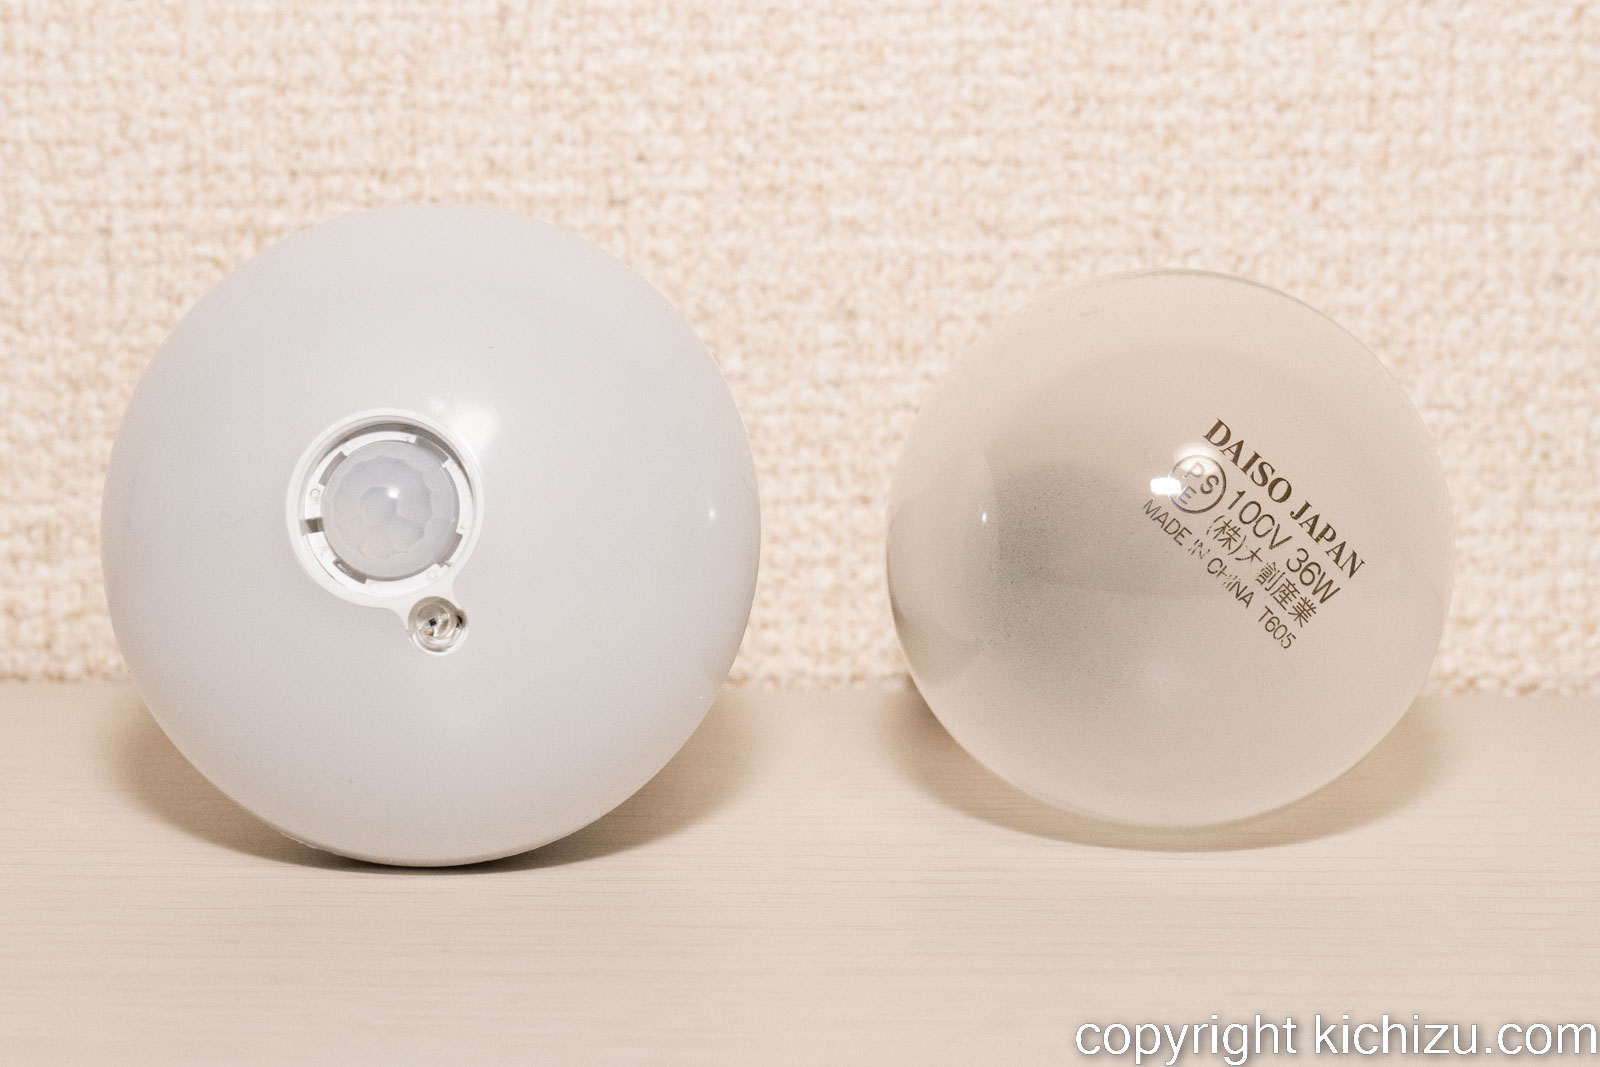 白熱シリカ電球と人感センサー付き LED 電球との比較